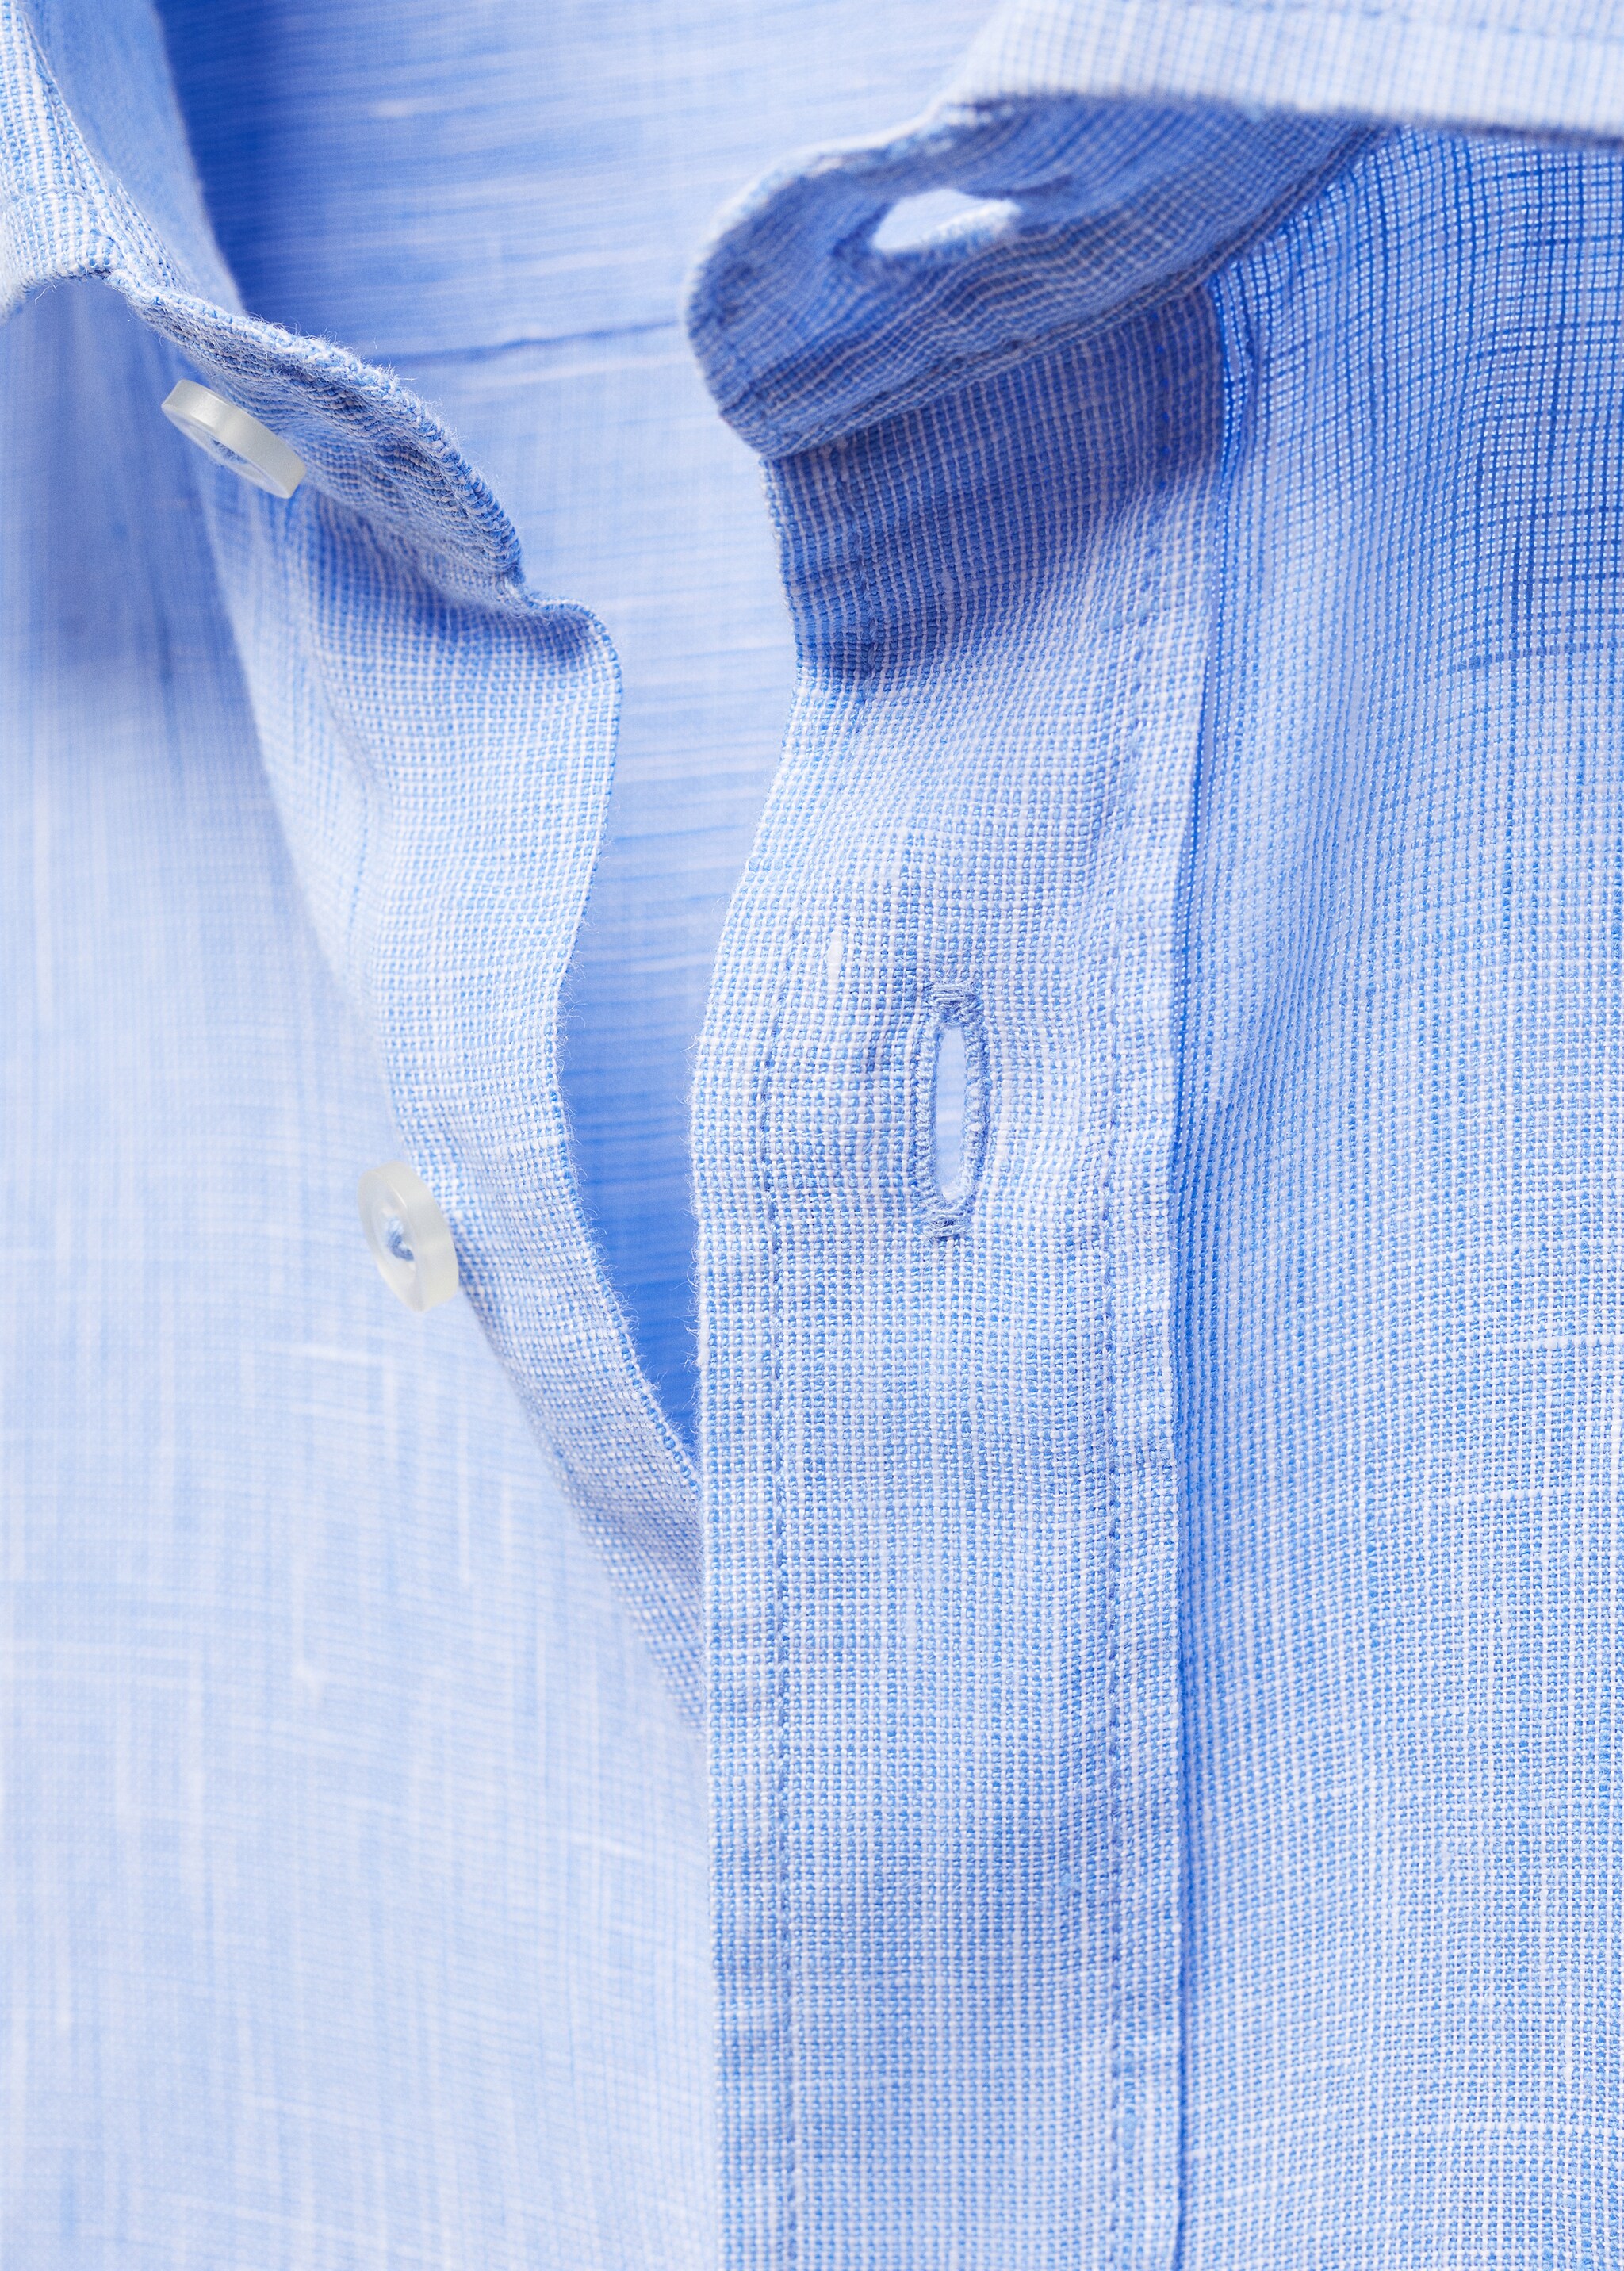 Camisa classic fit 100% lino - Detalle del artículo 8